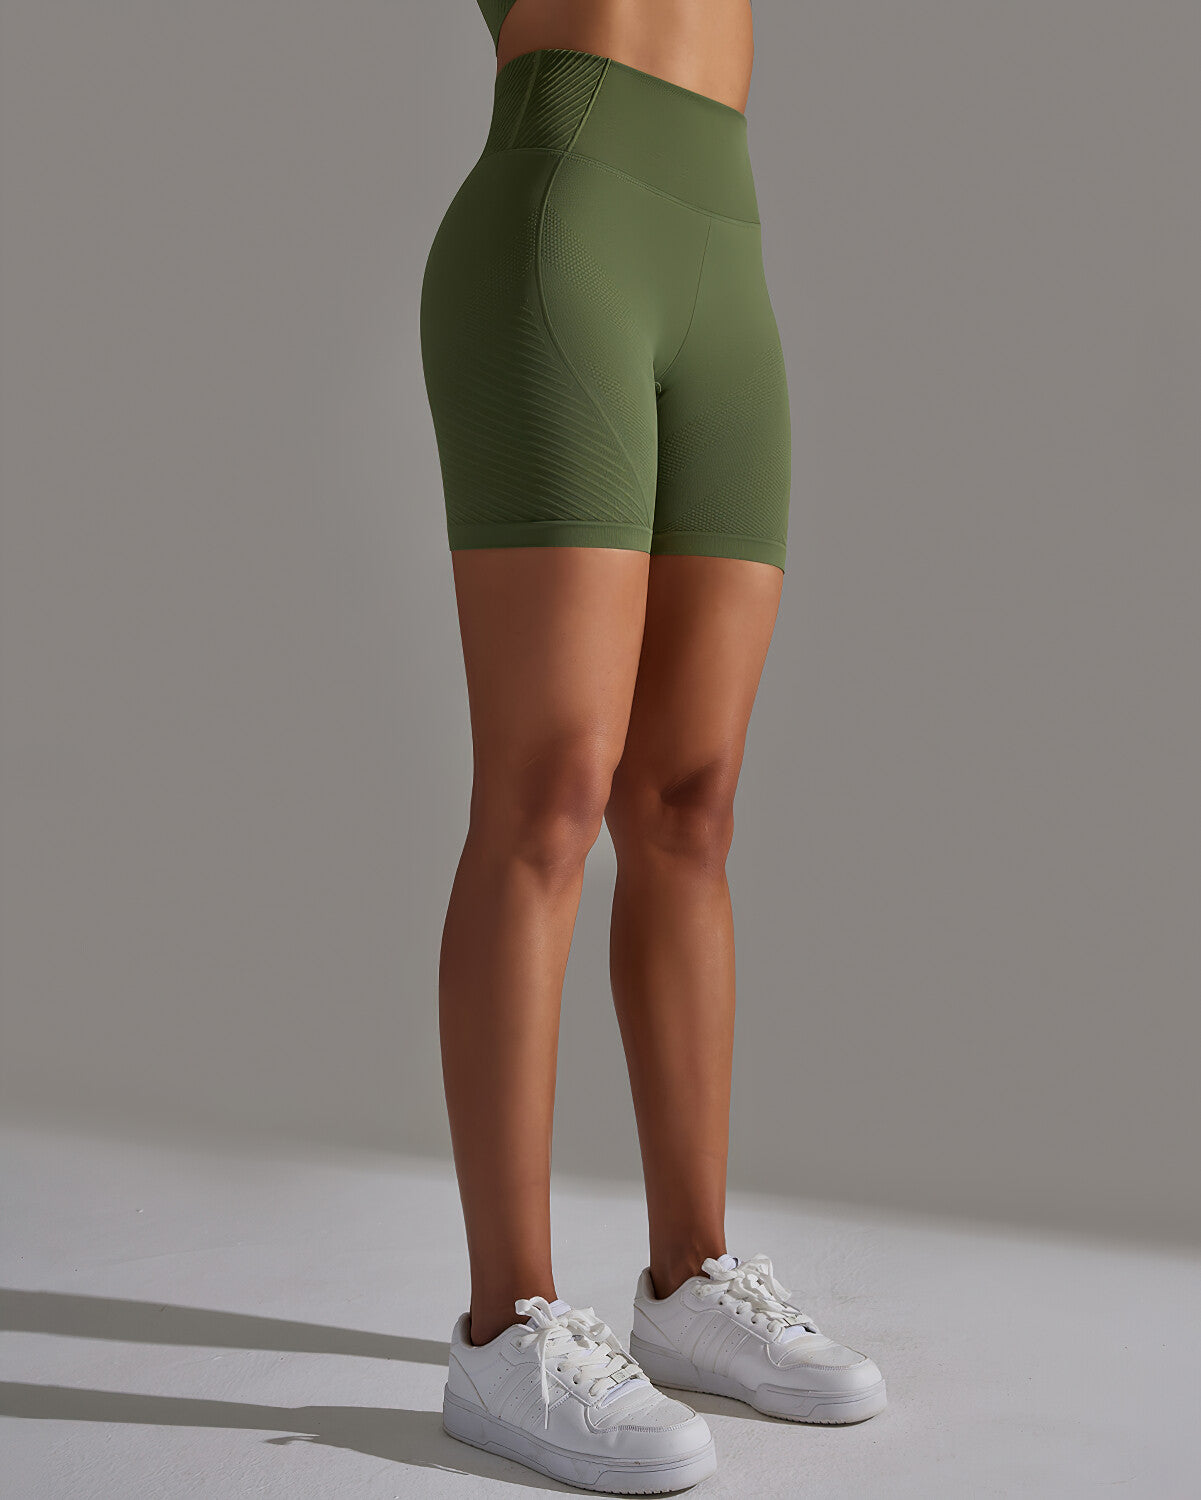 Cheyenne Shorts - Green